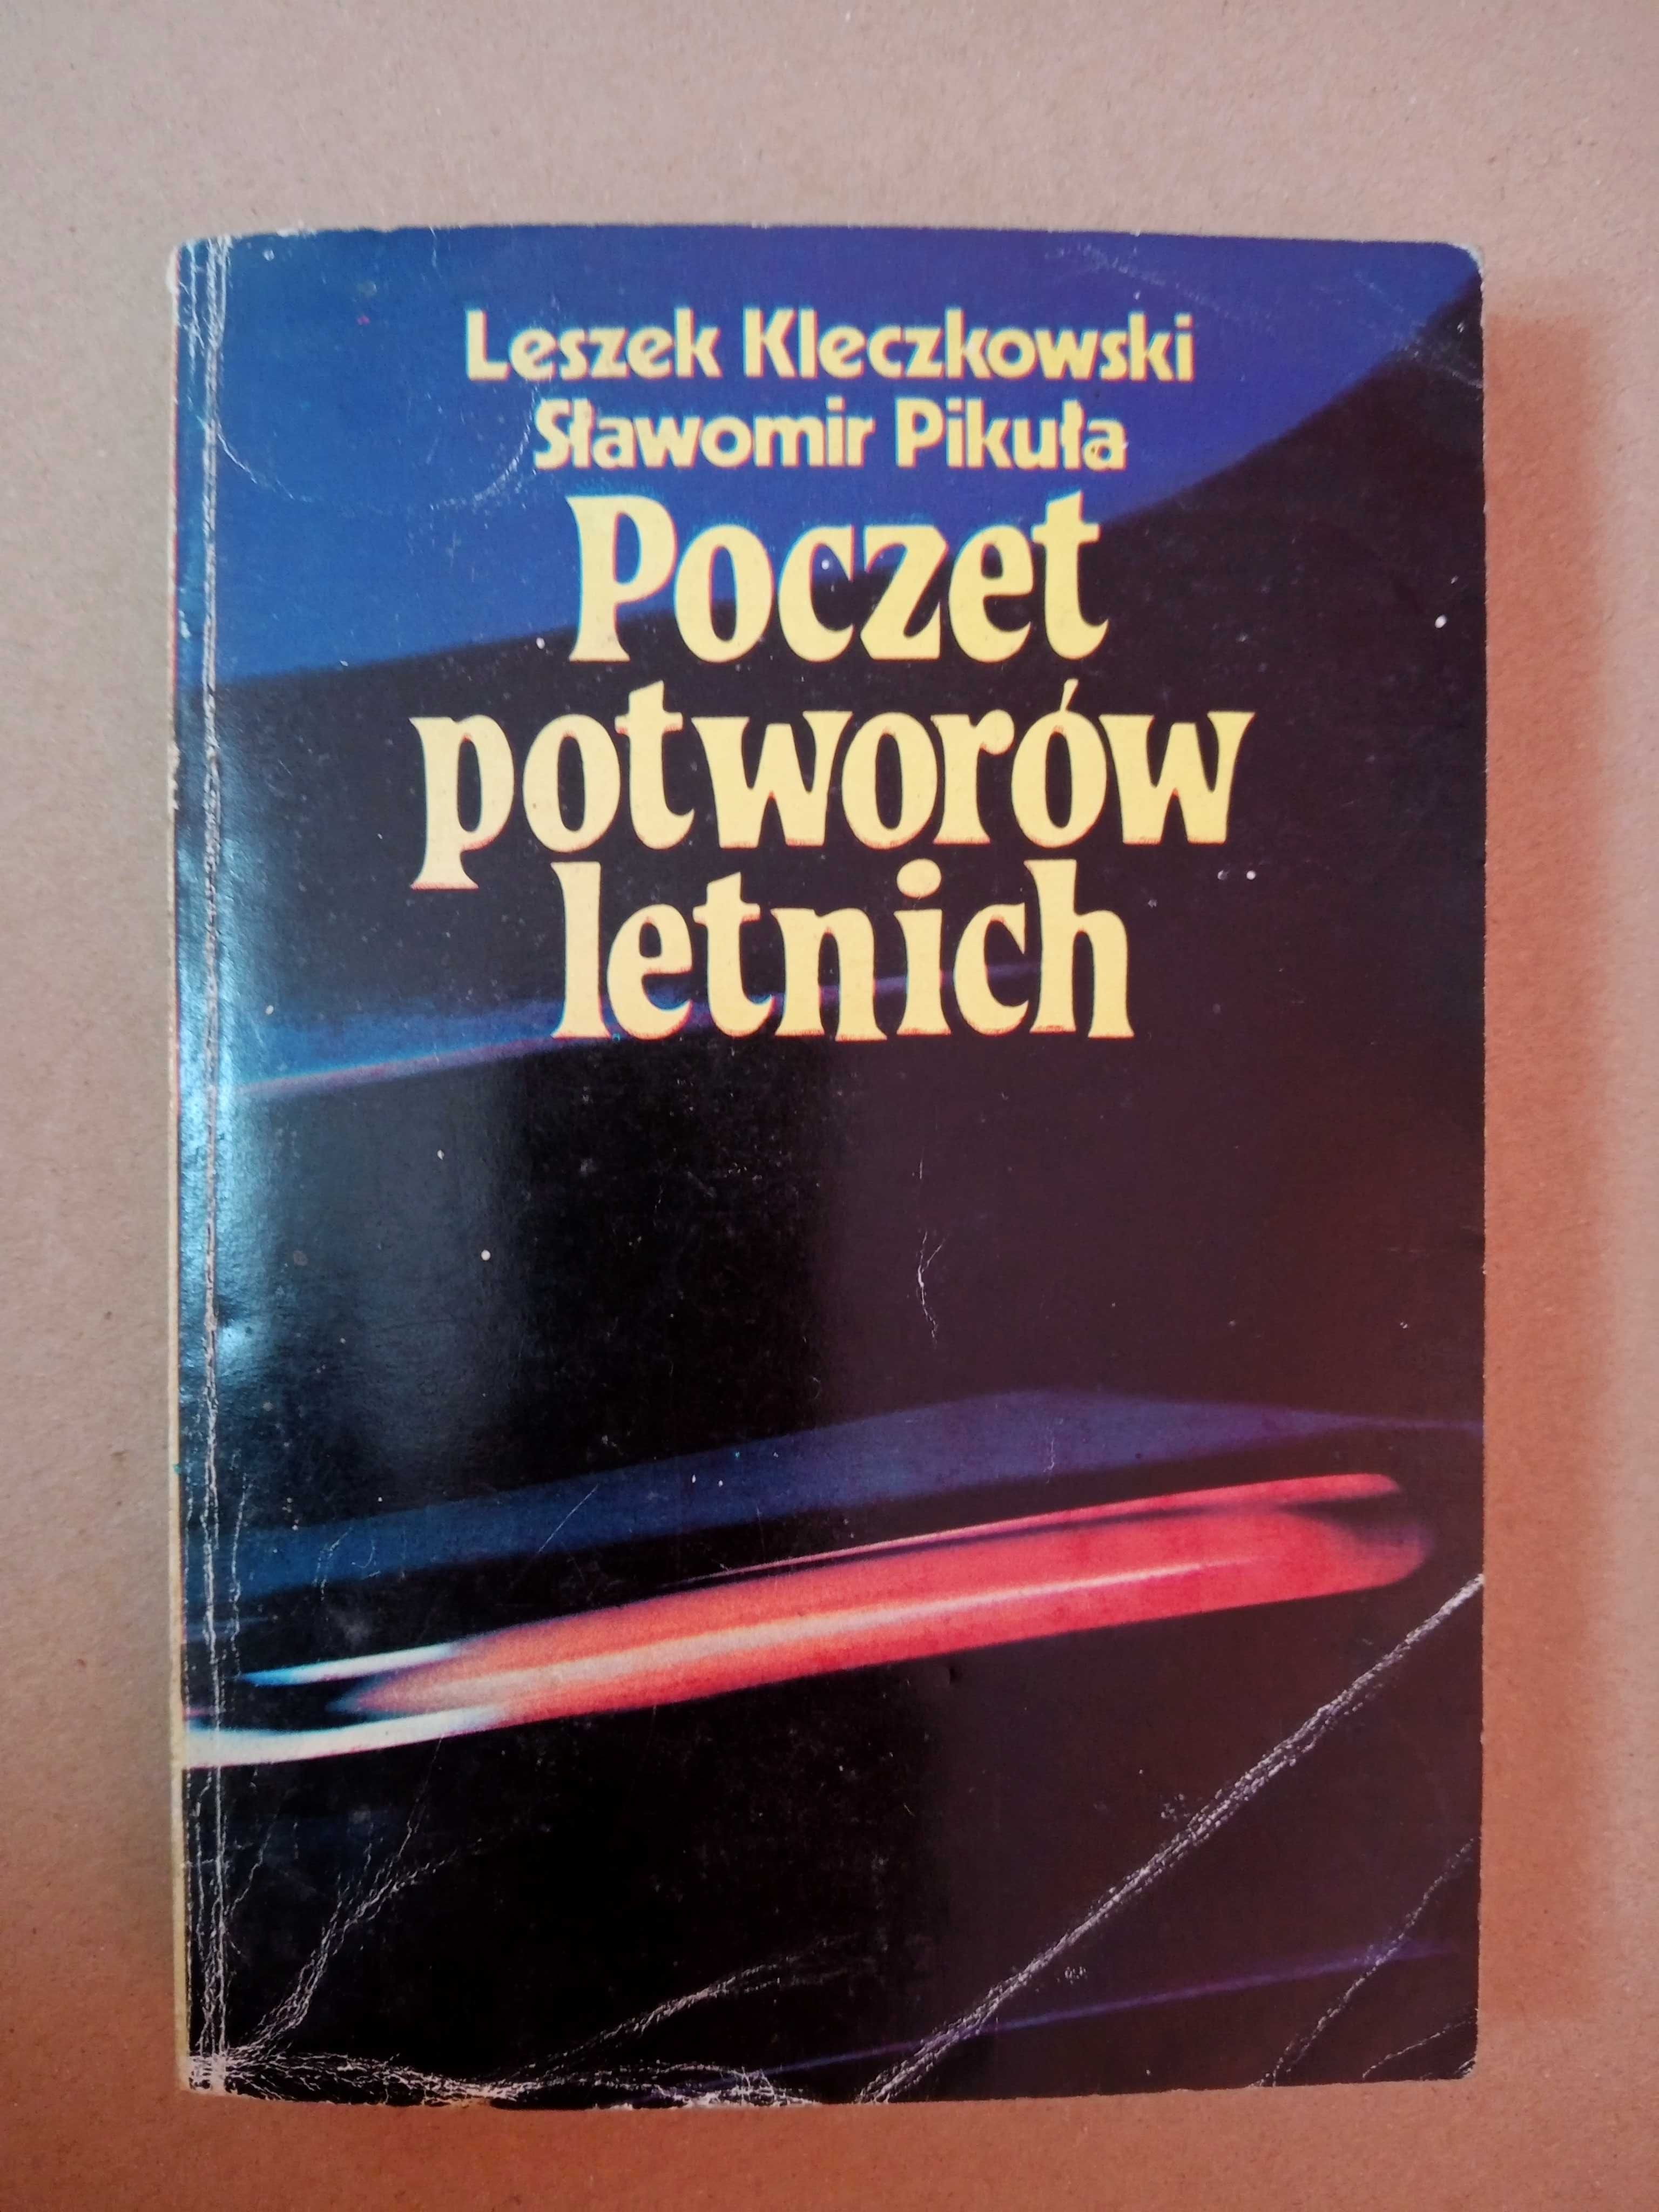 Poczet potworów letnich. Leszek Kleczkowski, Sławomir Pikuła